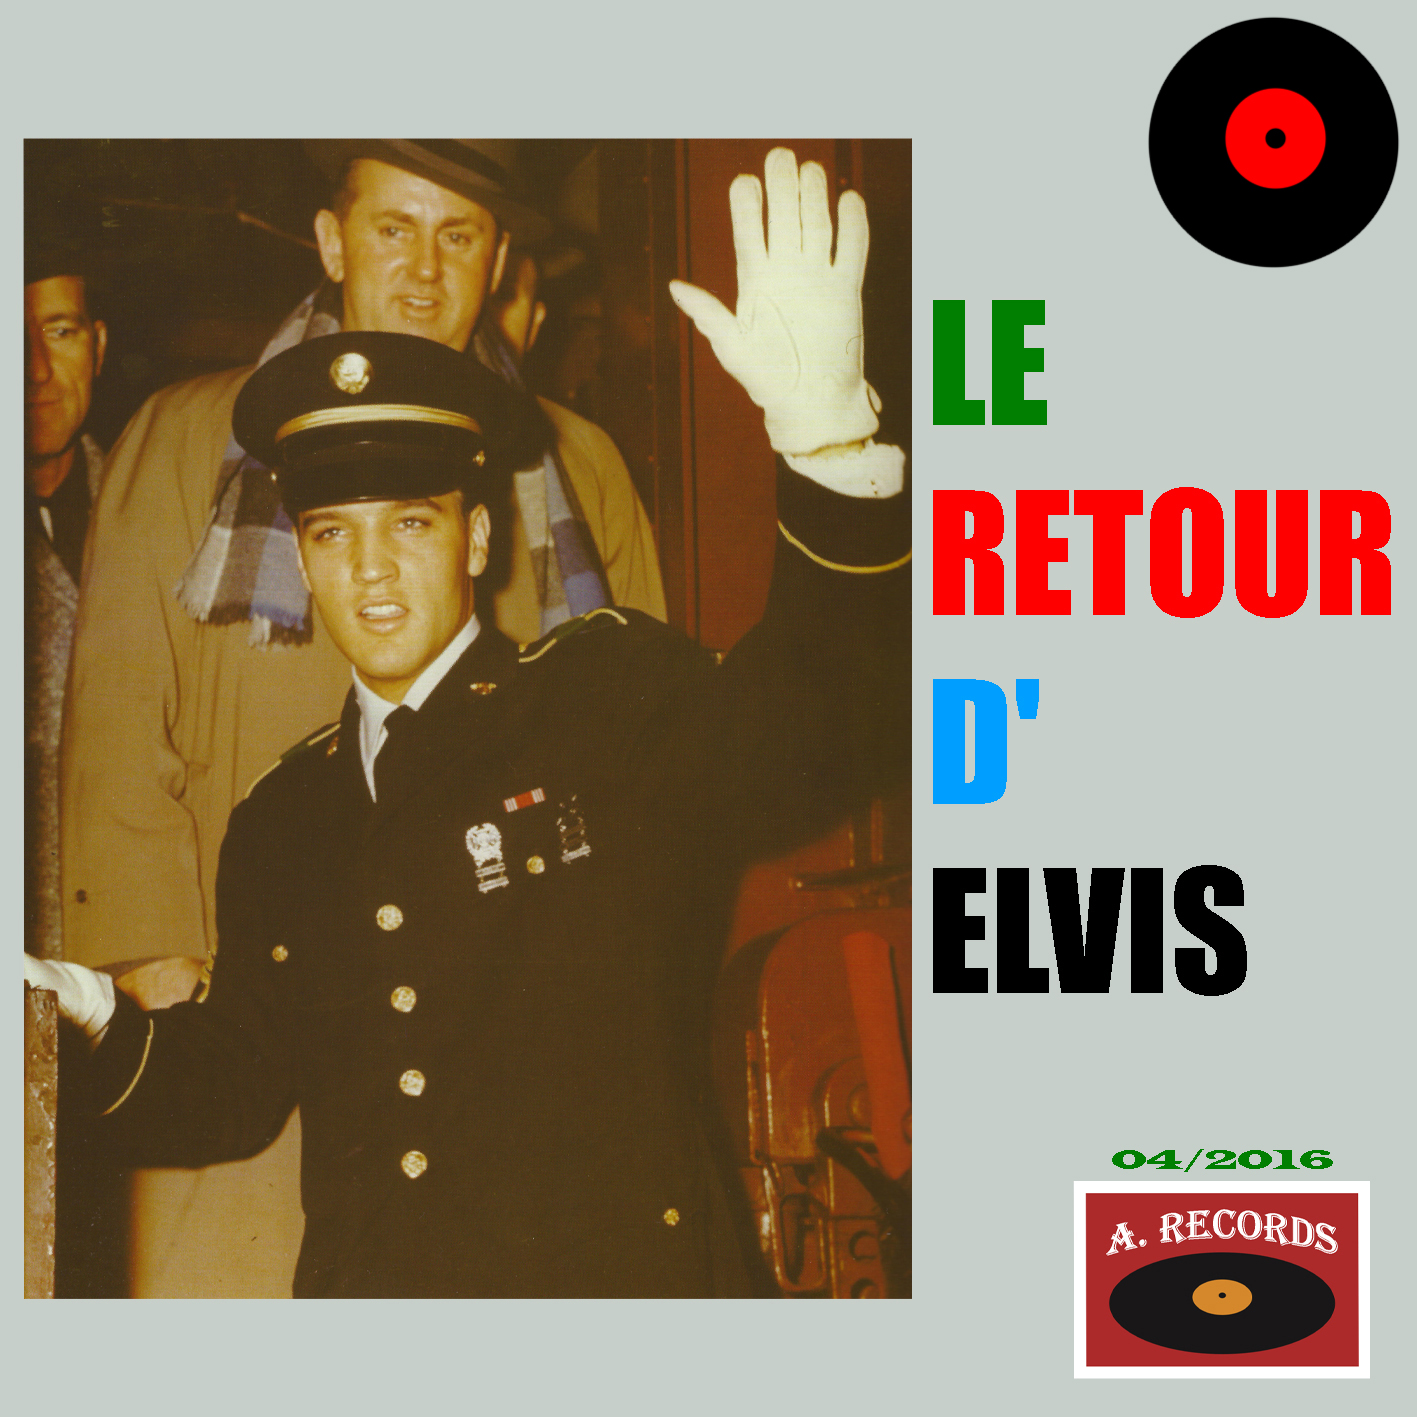 Le Retour D' Elvis (April 2016)